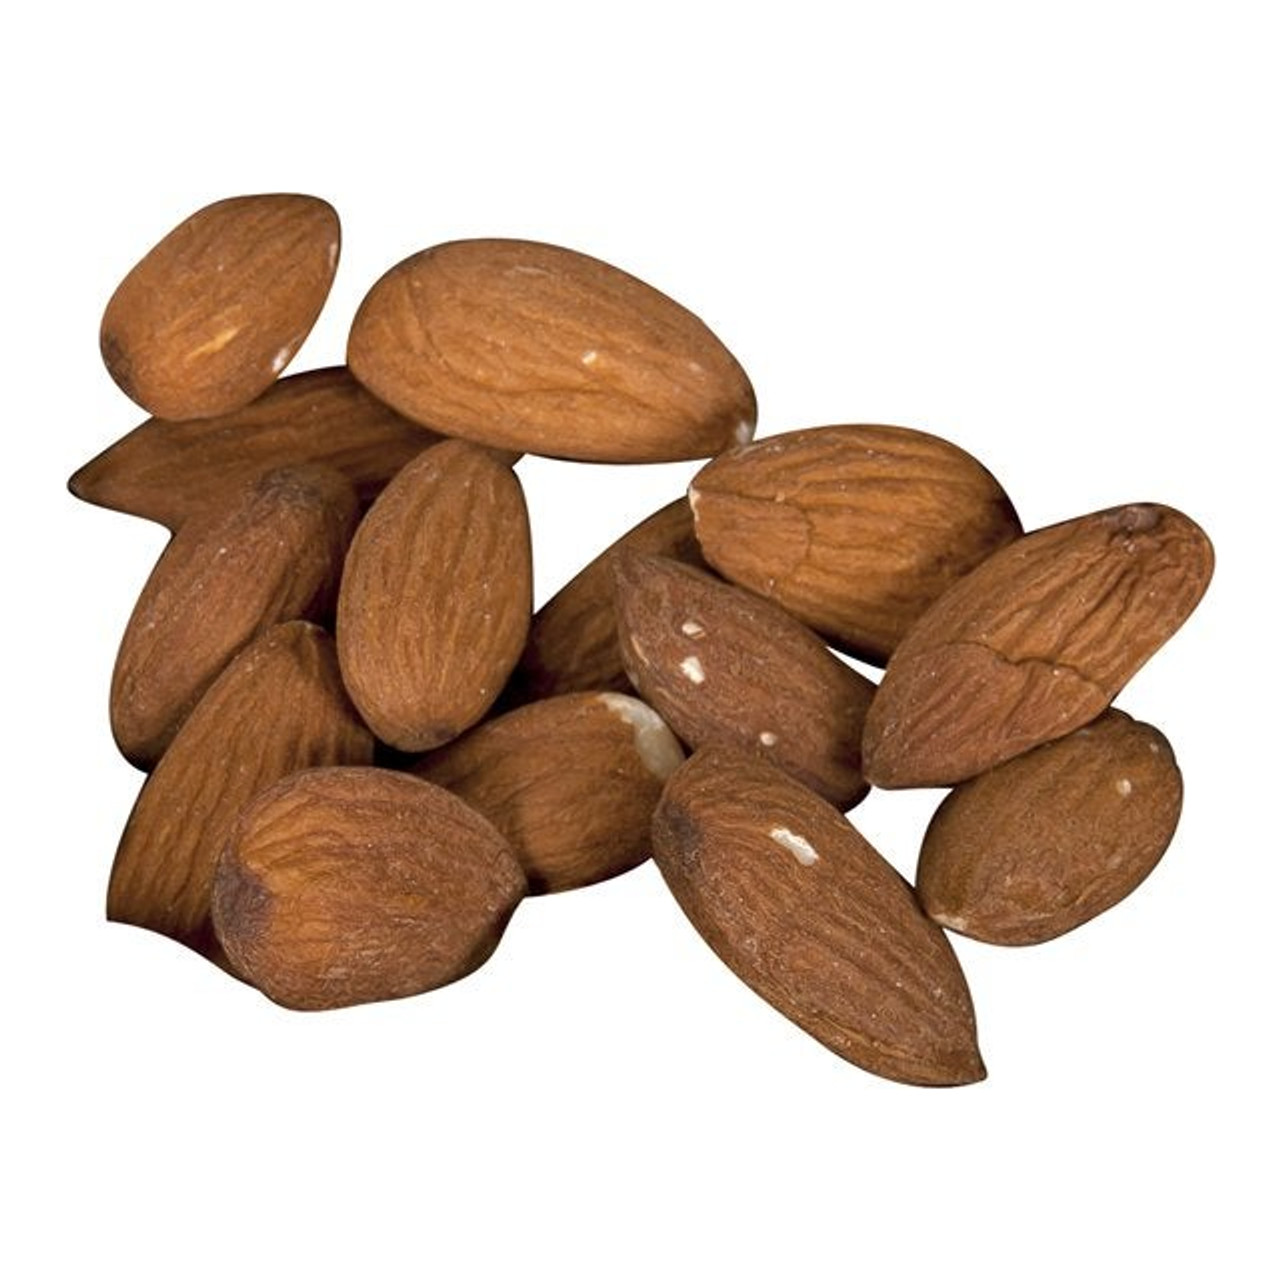 Trophy Foods Natural Whole Almonds | 6KG/Unit, 1 Unit/Case